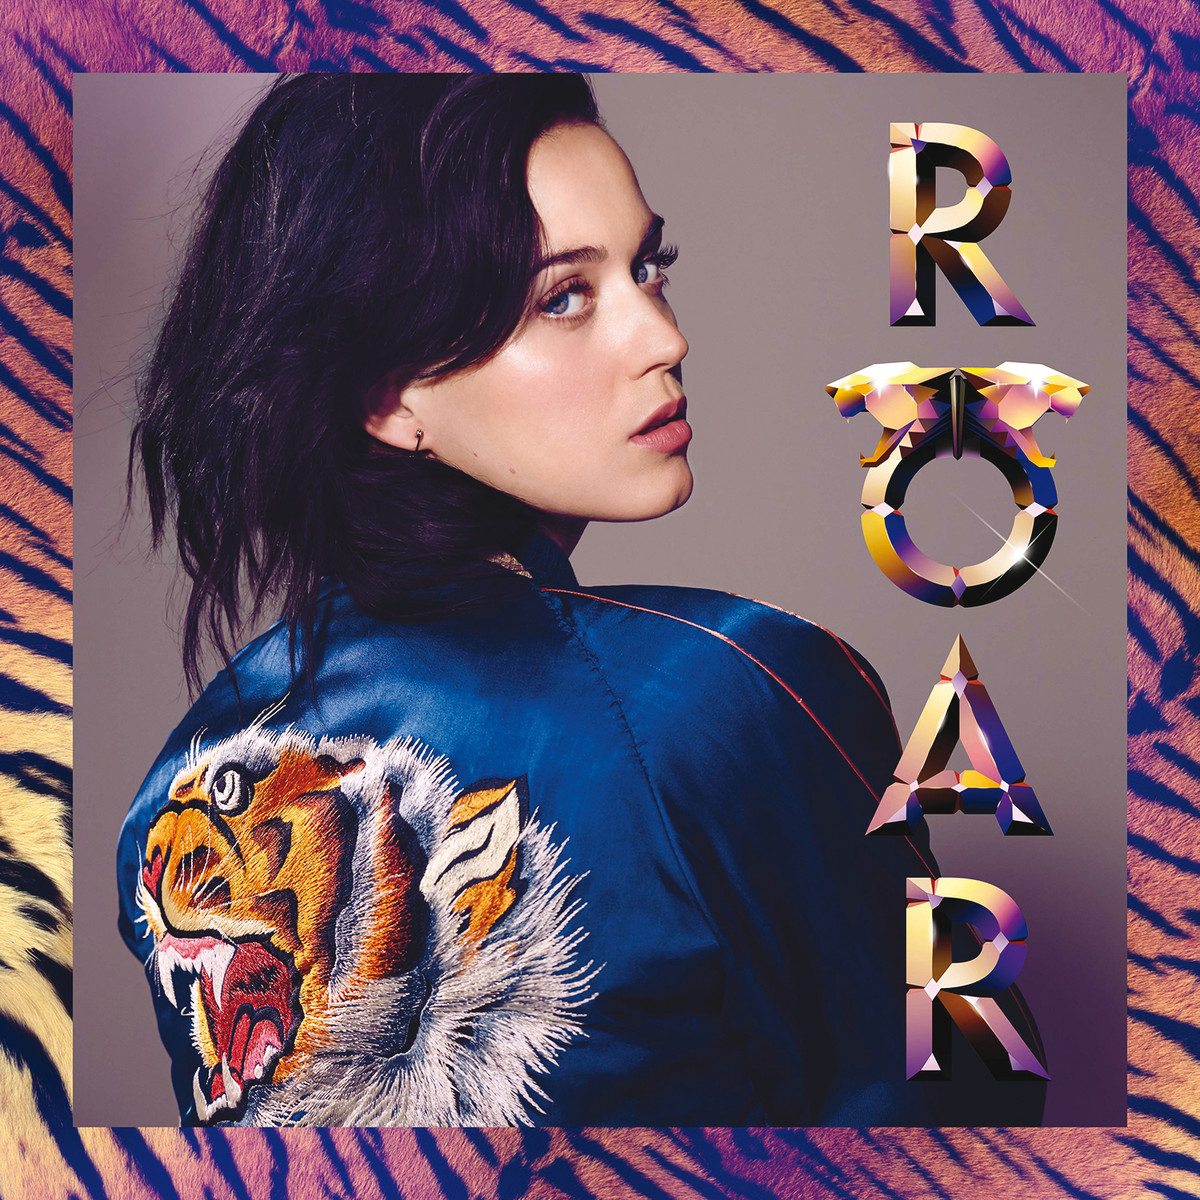 Katy Perry – Roar (Rock Version)